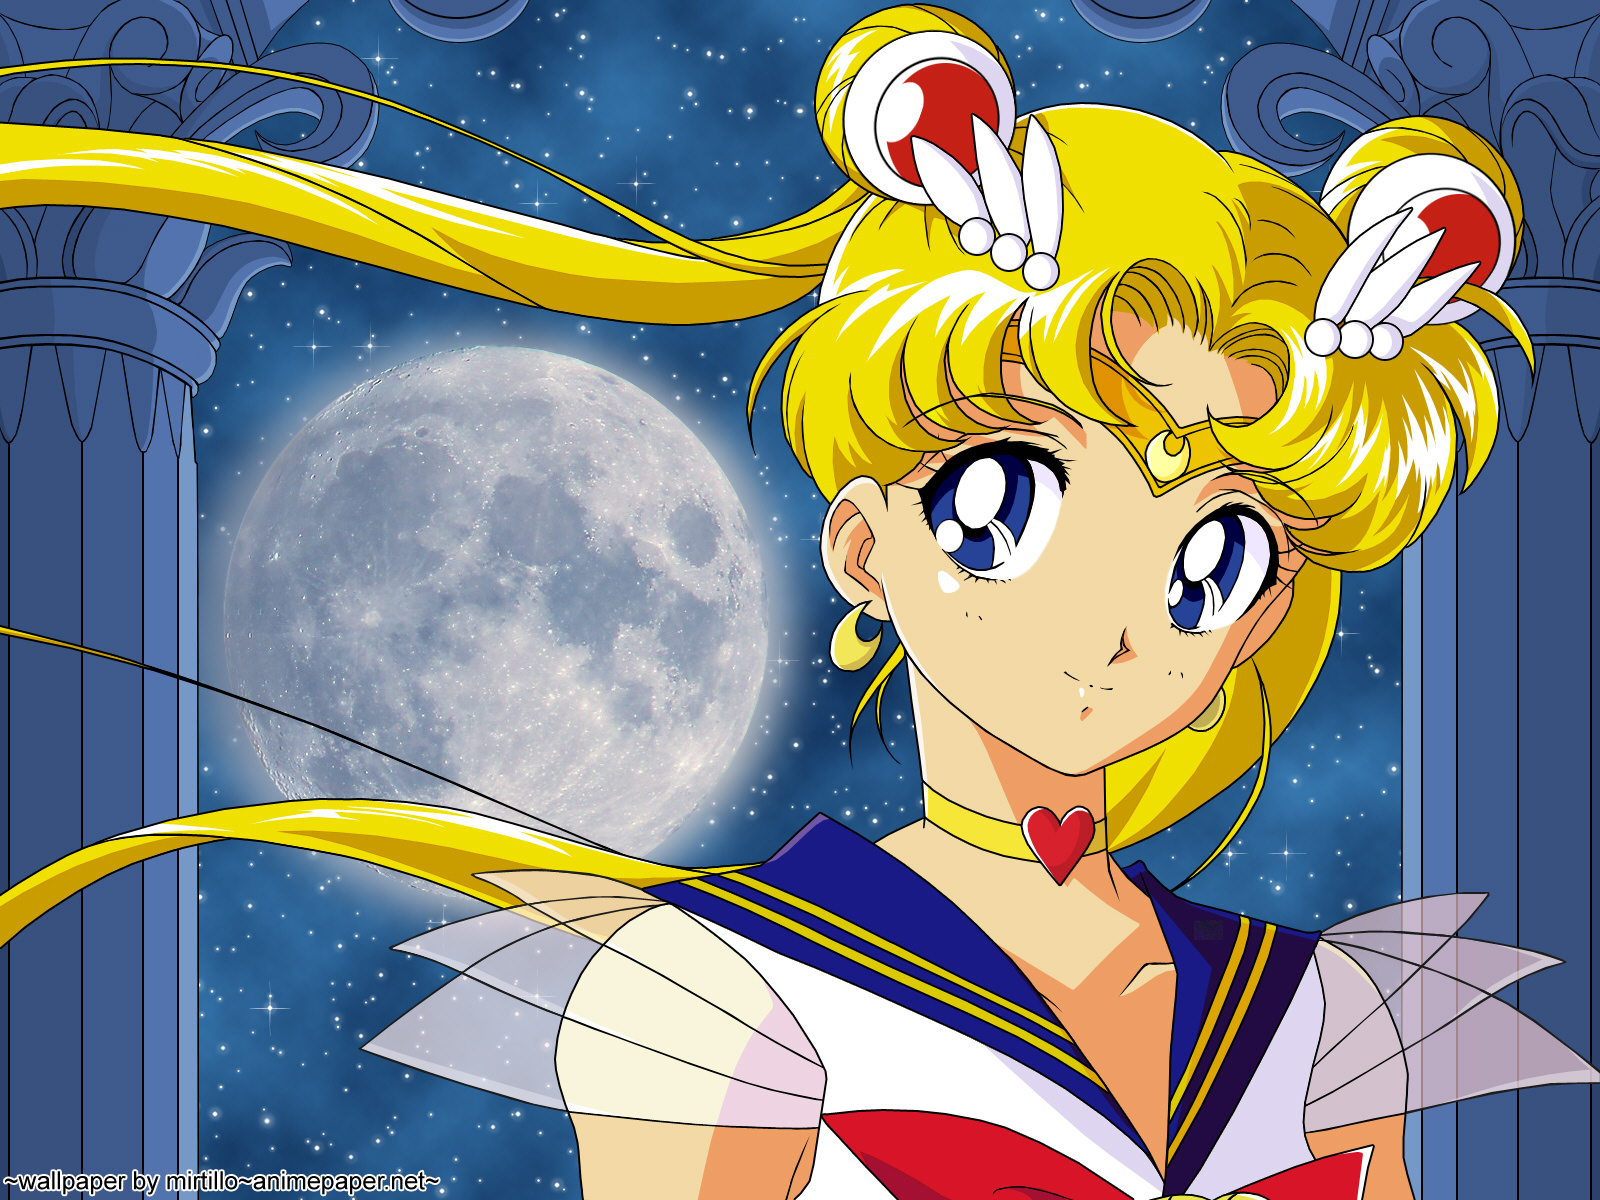 Prends Moi: Sailor Moon, una serie bien homosexual